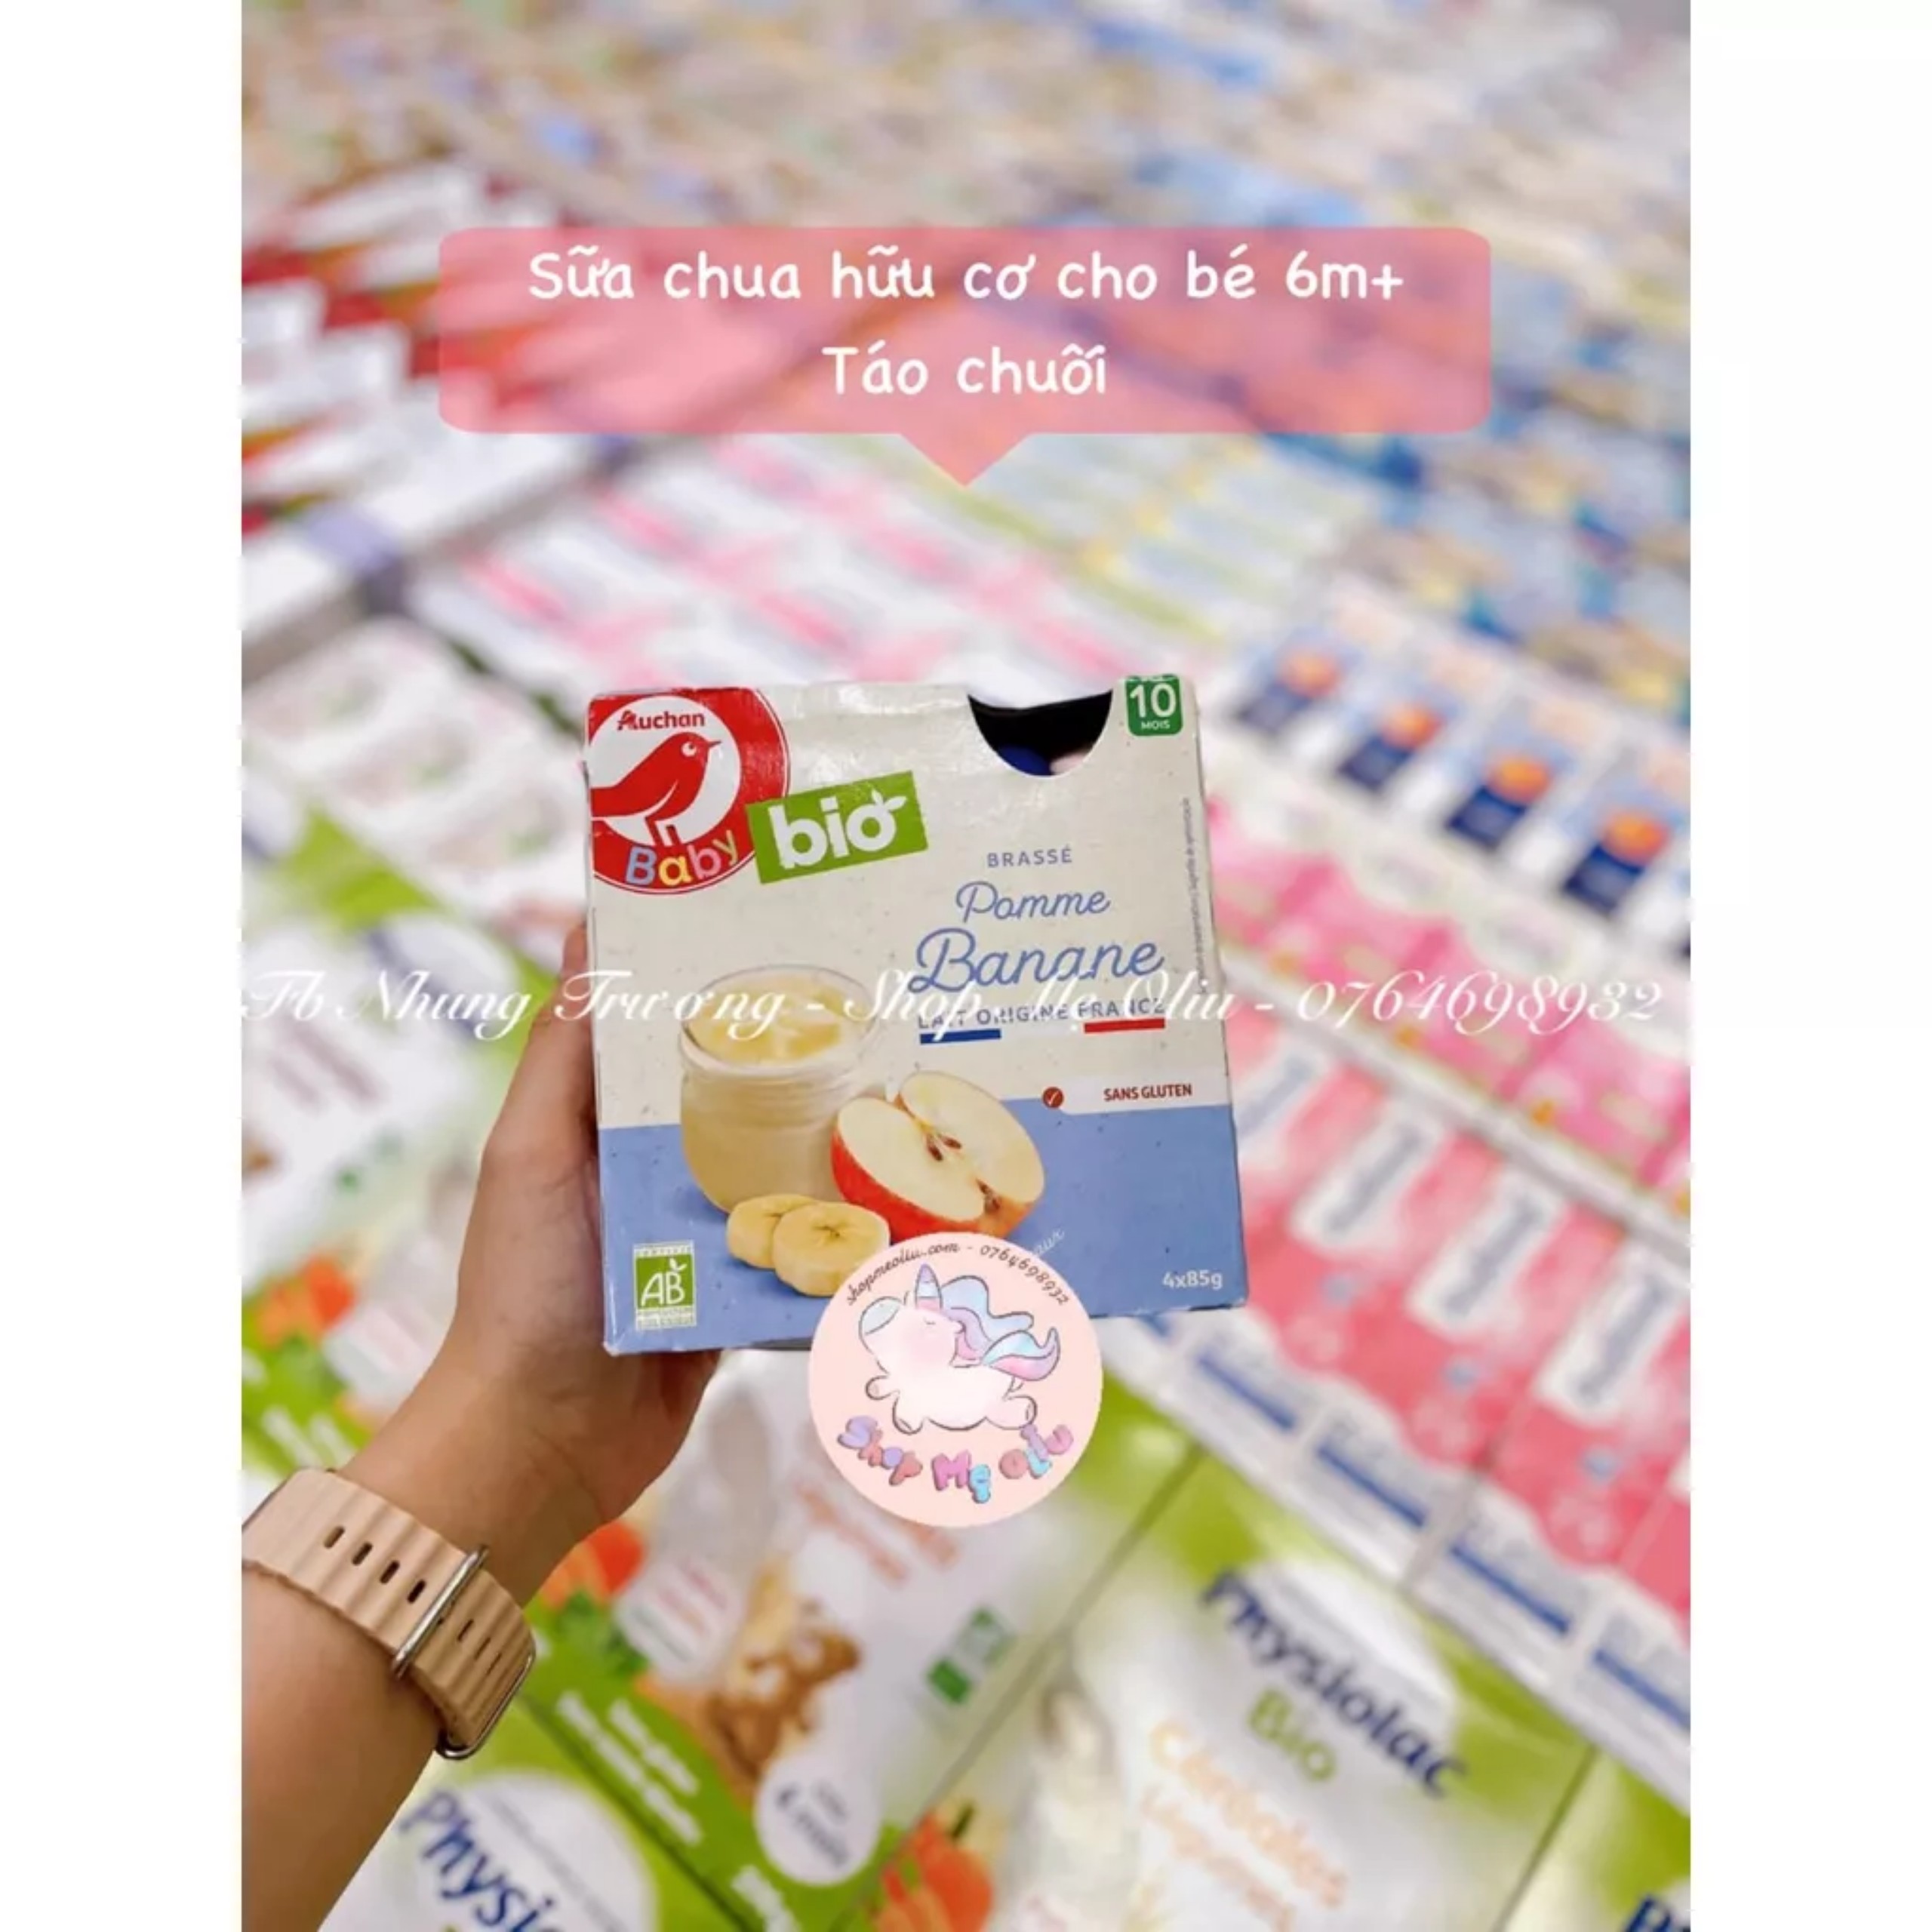 SHIP AIR Sữa chua hữu cơ Auchan Bio dạng túi cho bé từ 10 tháng 4 x 85g